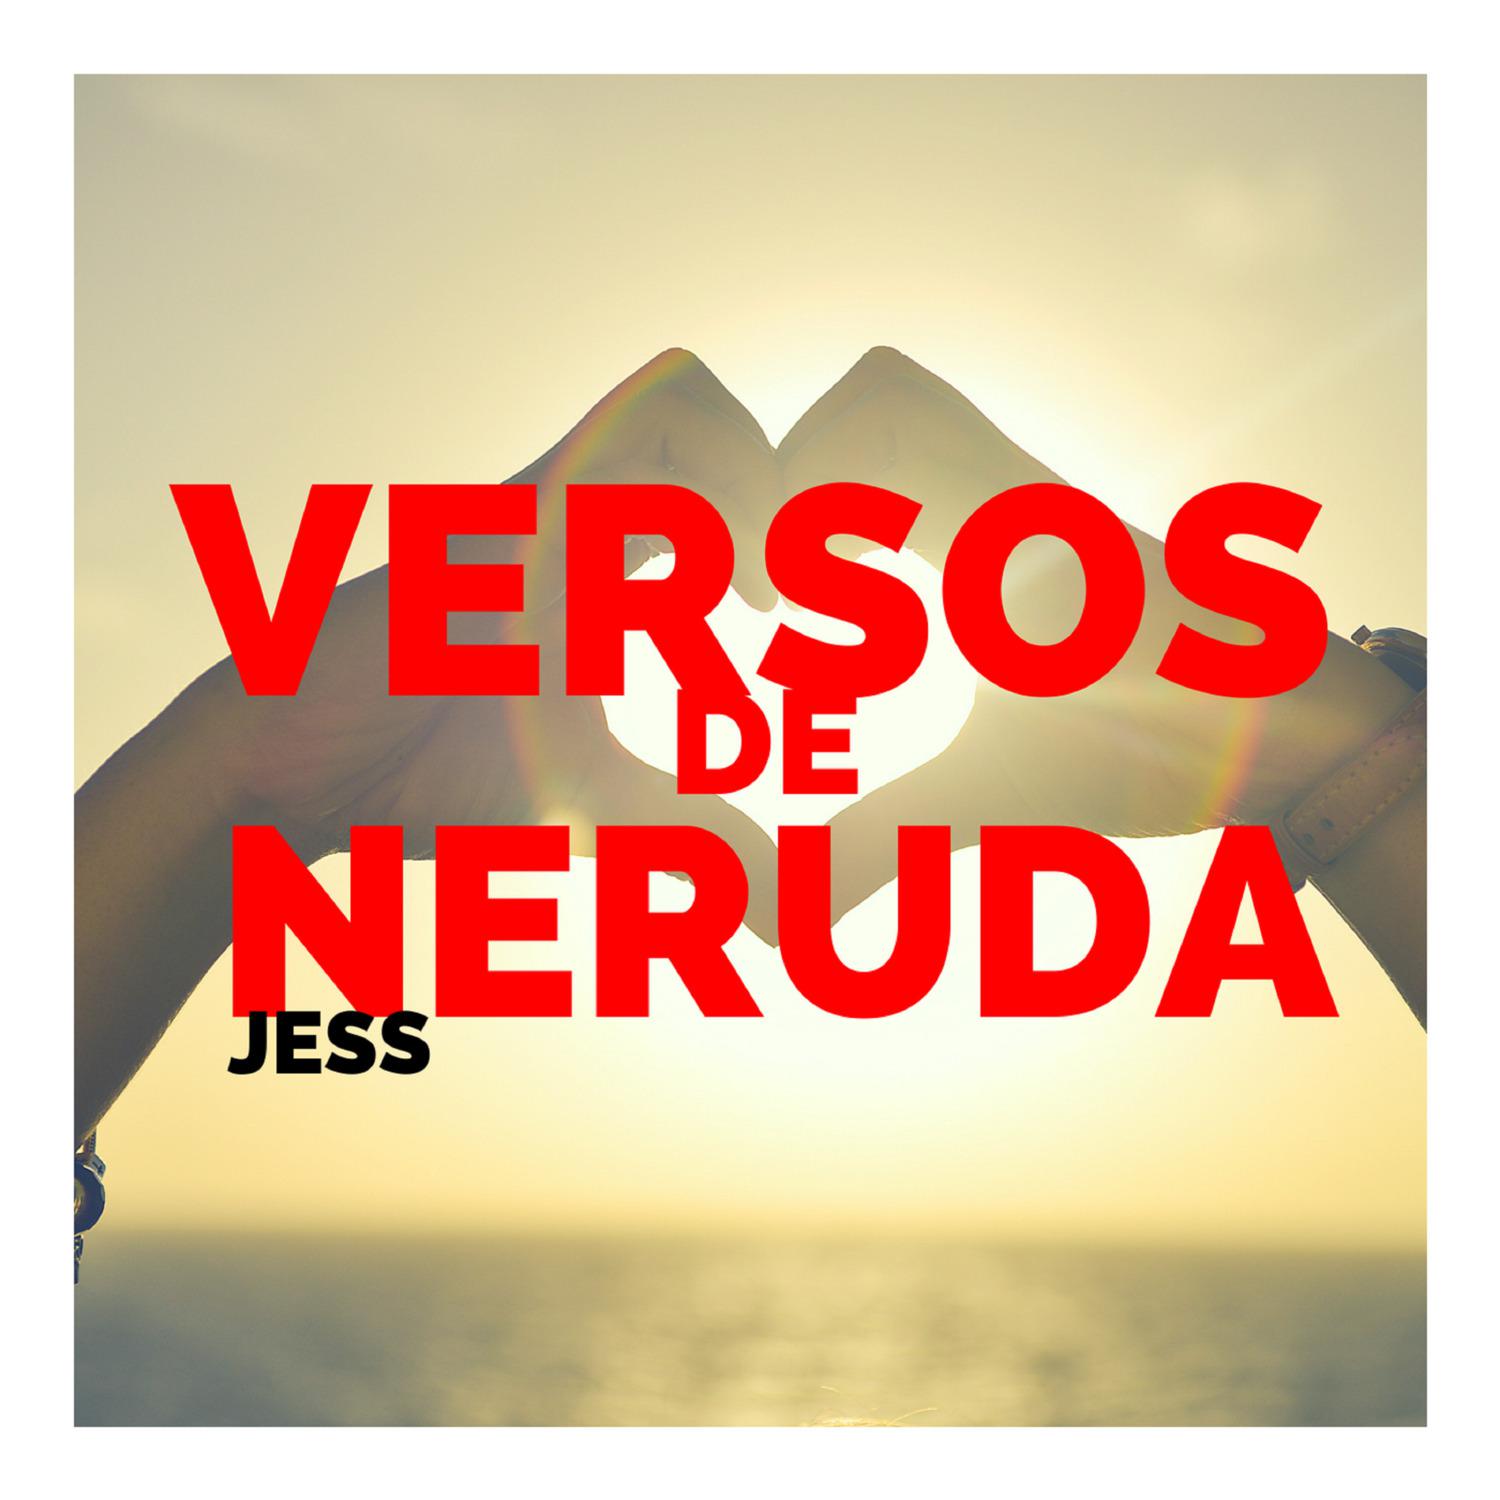 Versos de Neruda